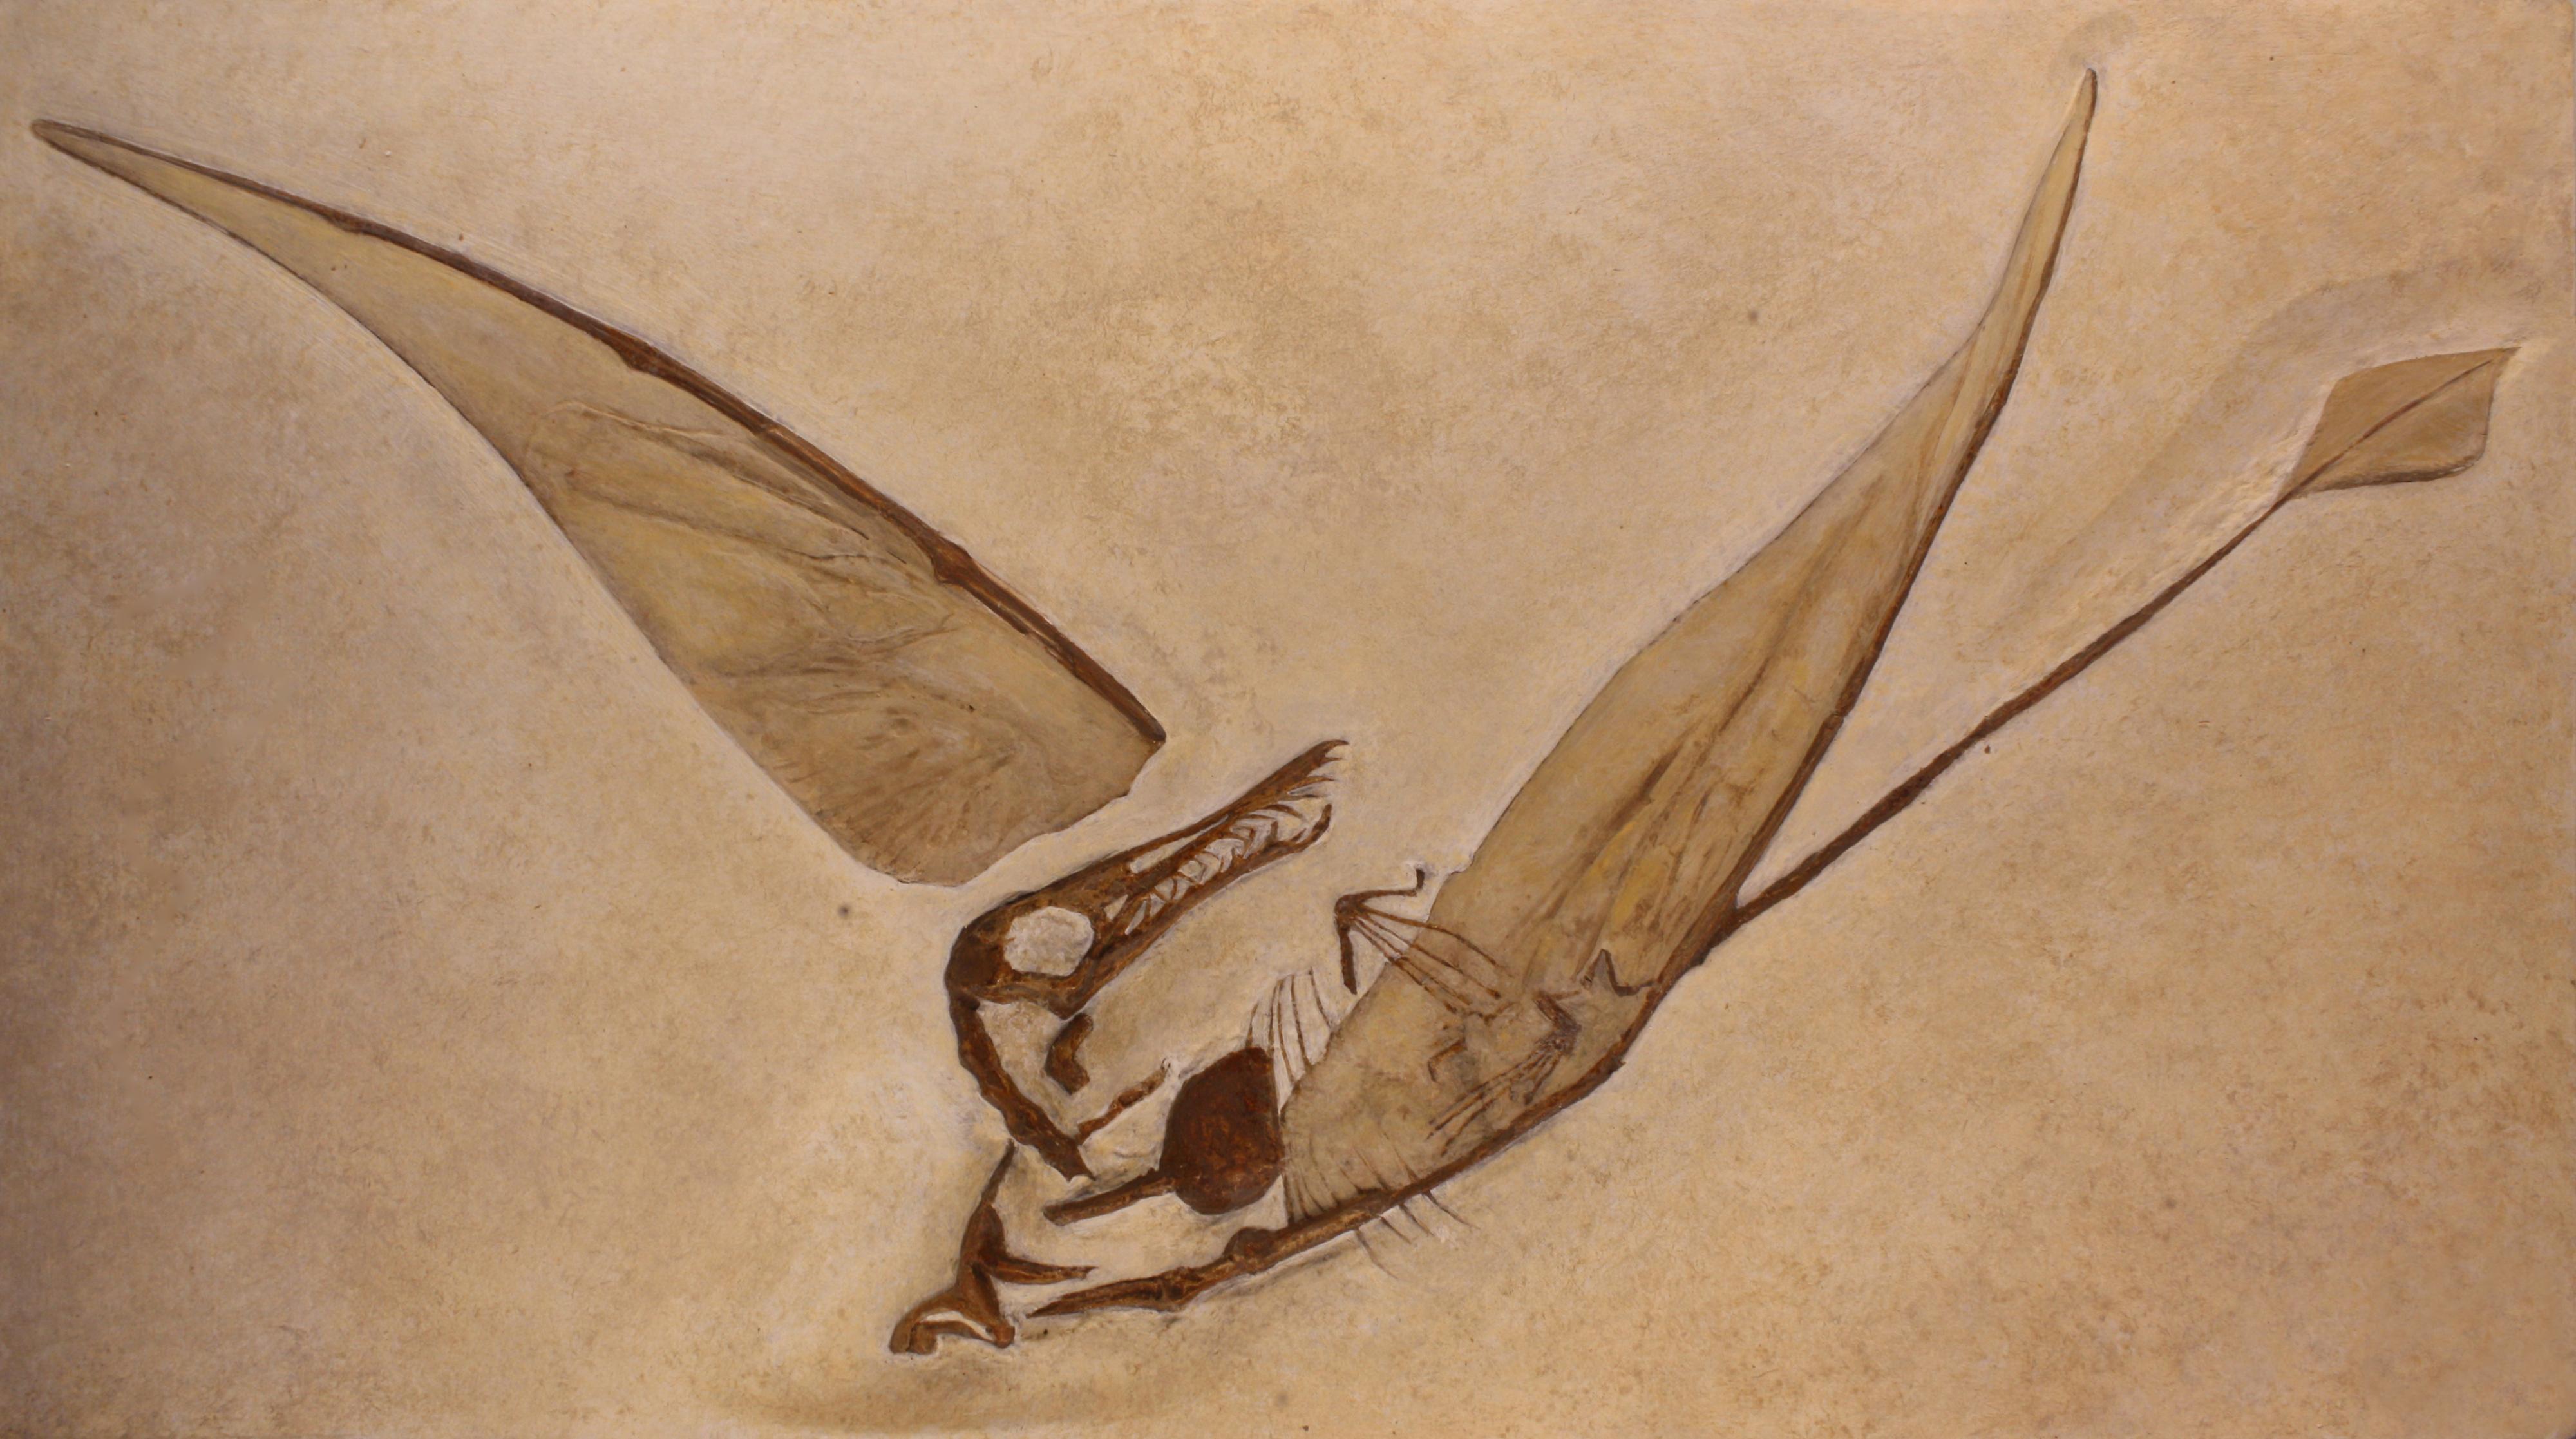 Un moulage de Rhamphorhynchus munsteri vivant entre -155'000'000 et -150'000'000 ans, au Musée des sciences naturelles de Bruxelles. [CC BY-SA 3.0 - M0tty]